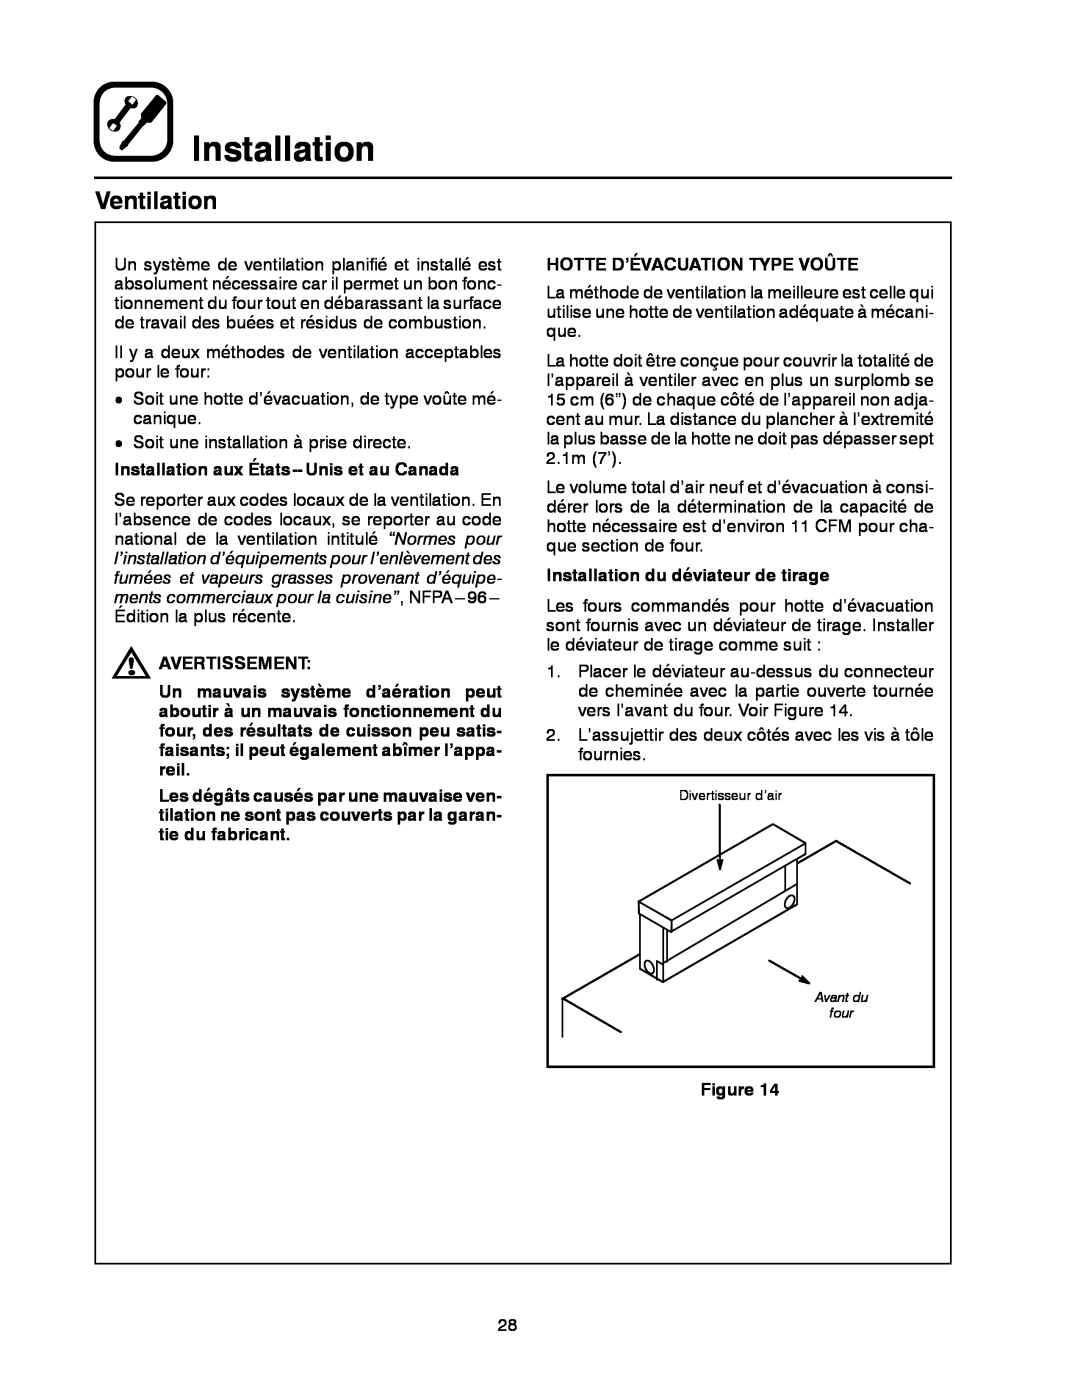 Blodgett 900 SERIES manual Ventilation, Installation aux États-- Unis et au Canada, Avertissement 